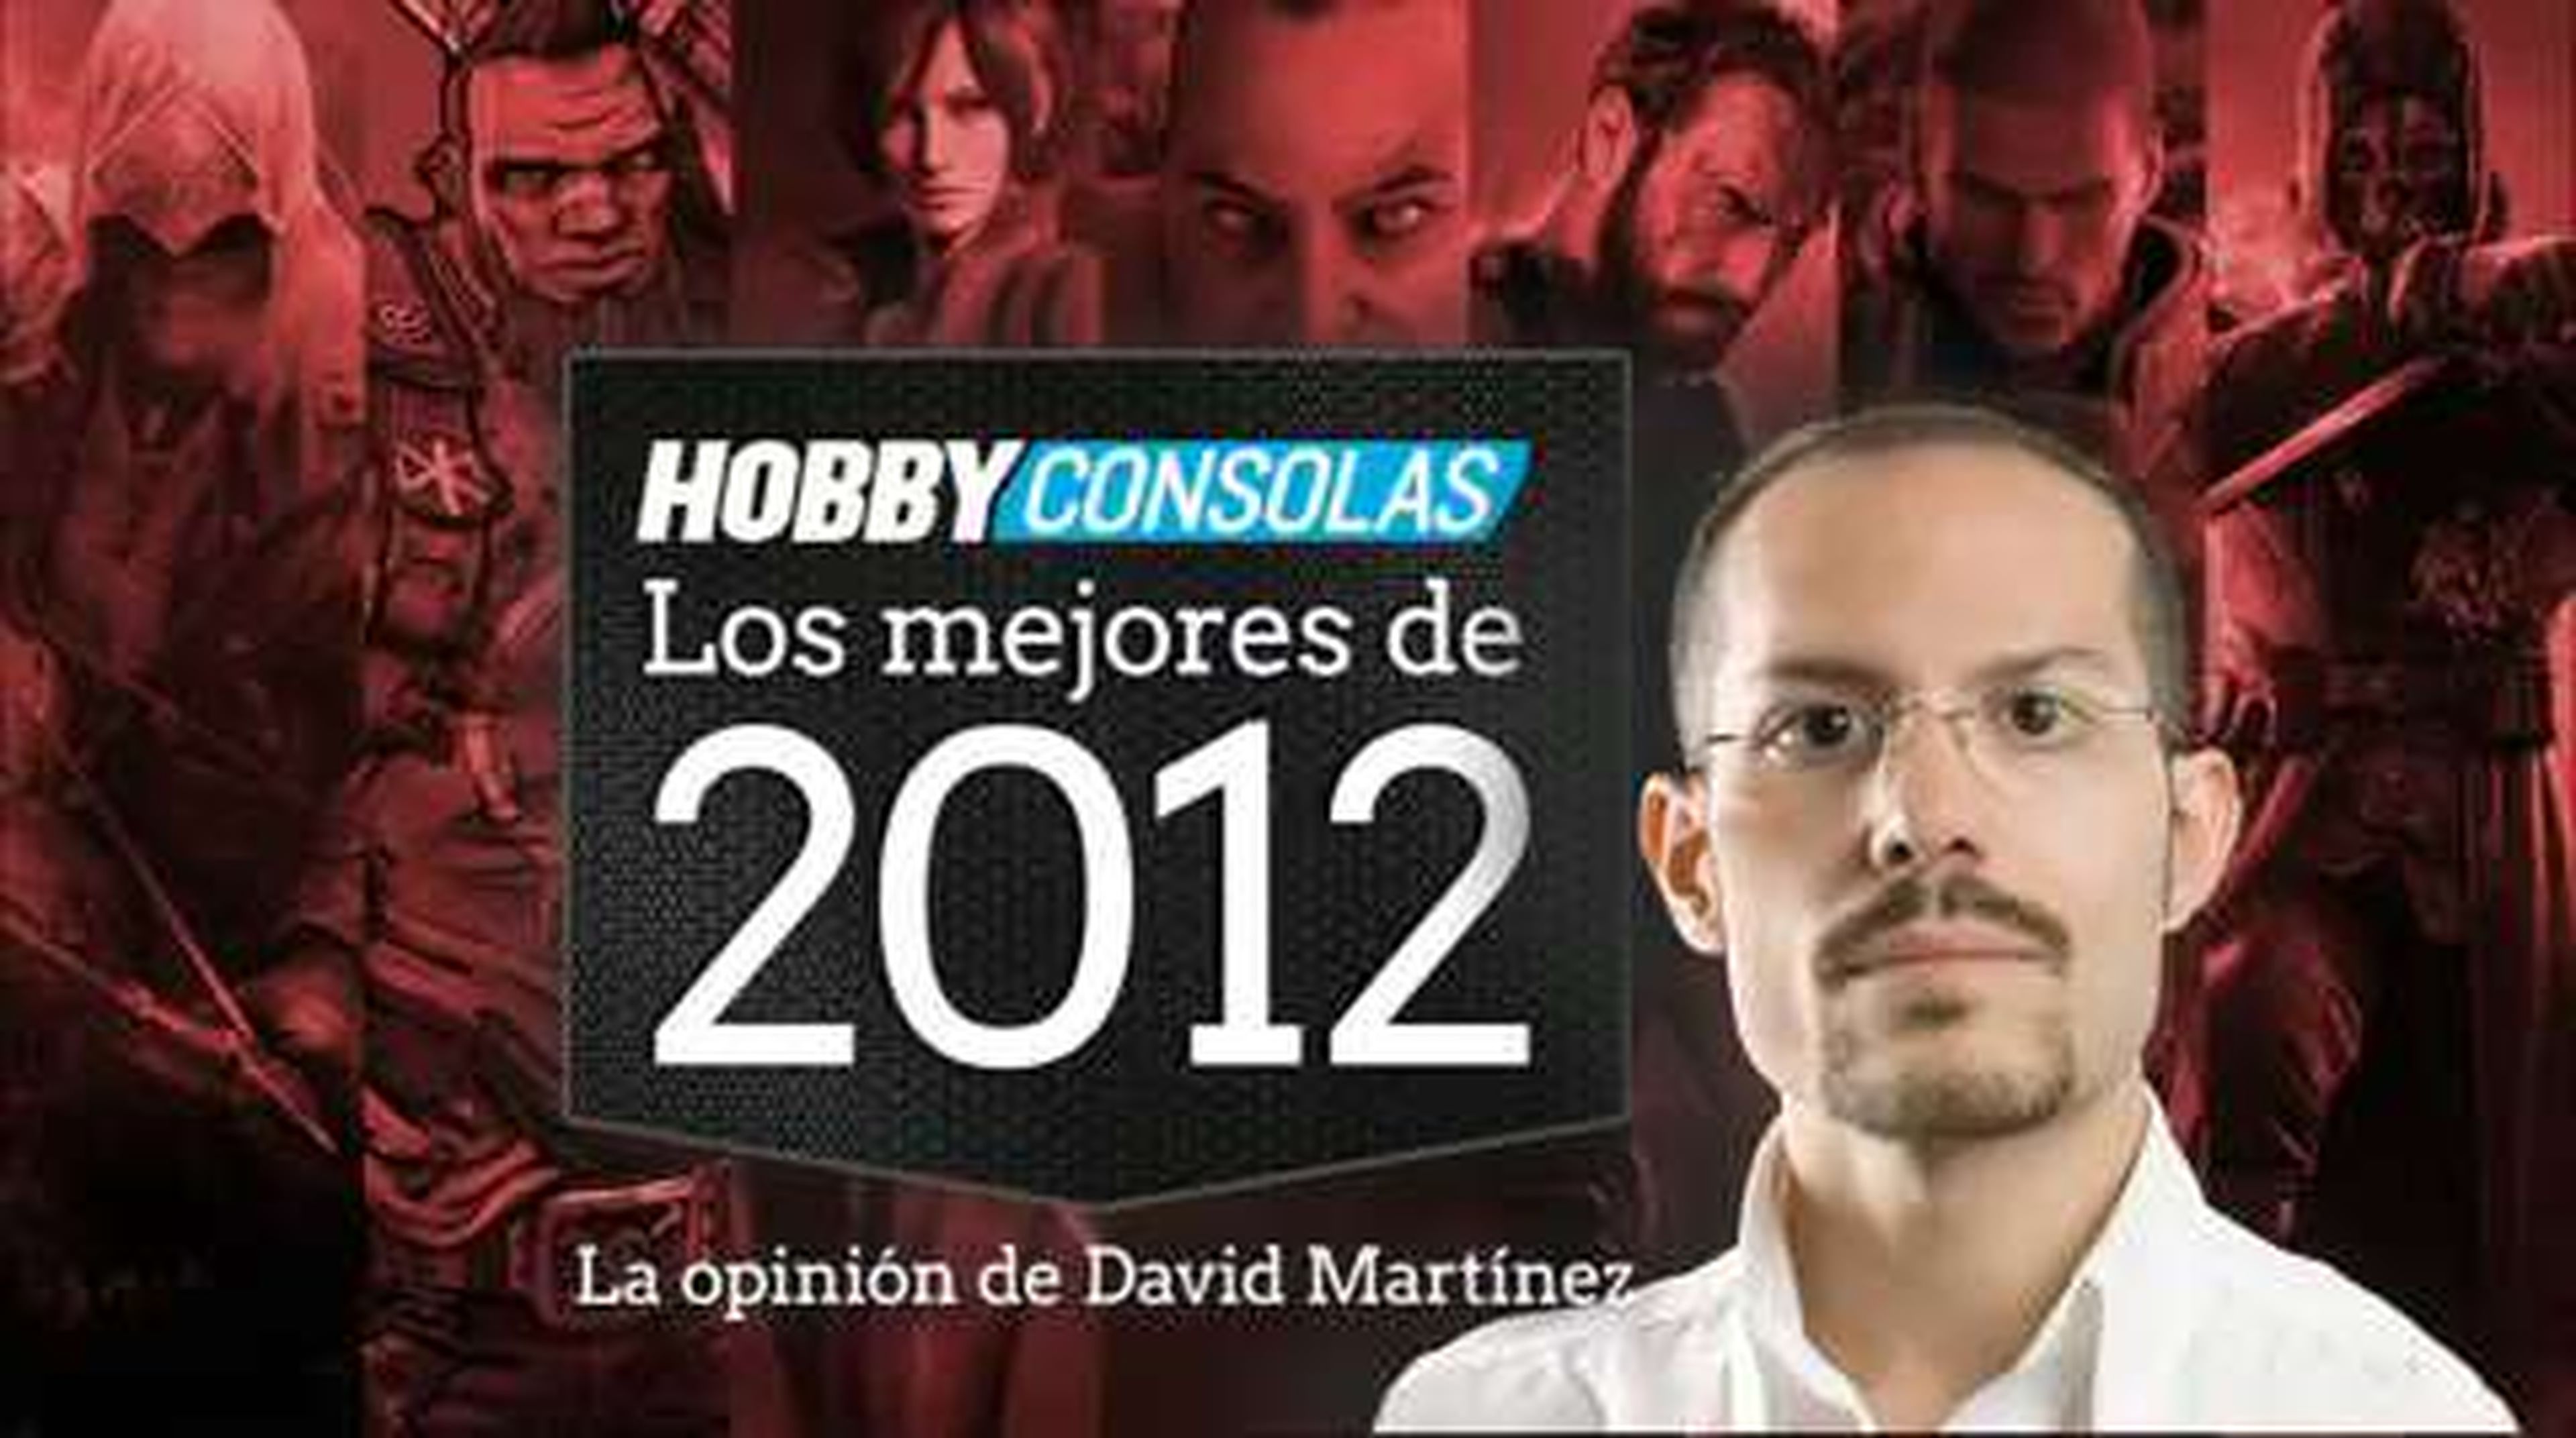 Lo mejor de 2012 (HD) David Martínez en HobbyConsolas.com